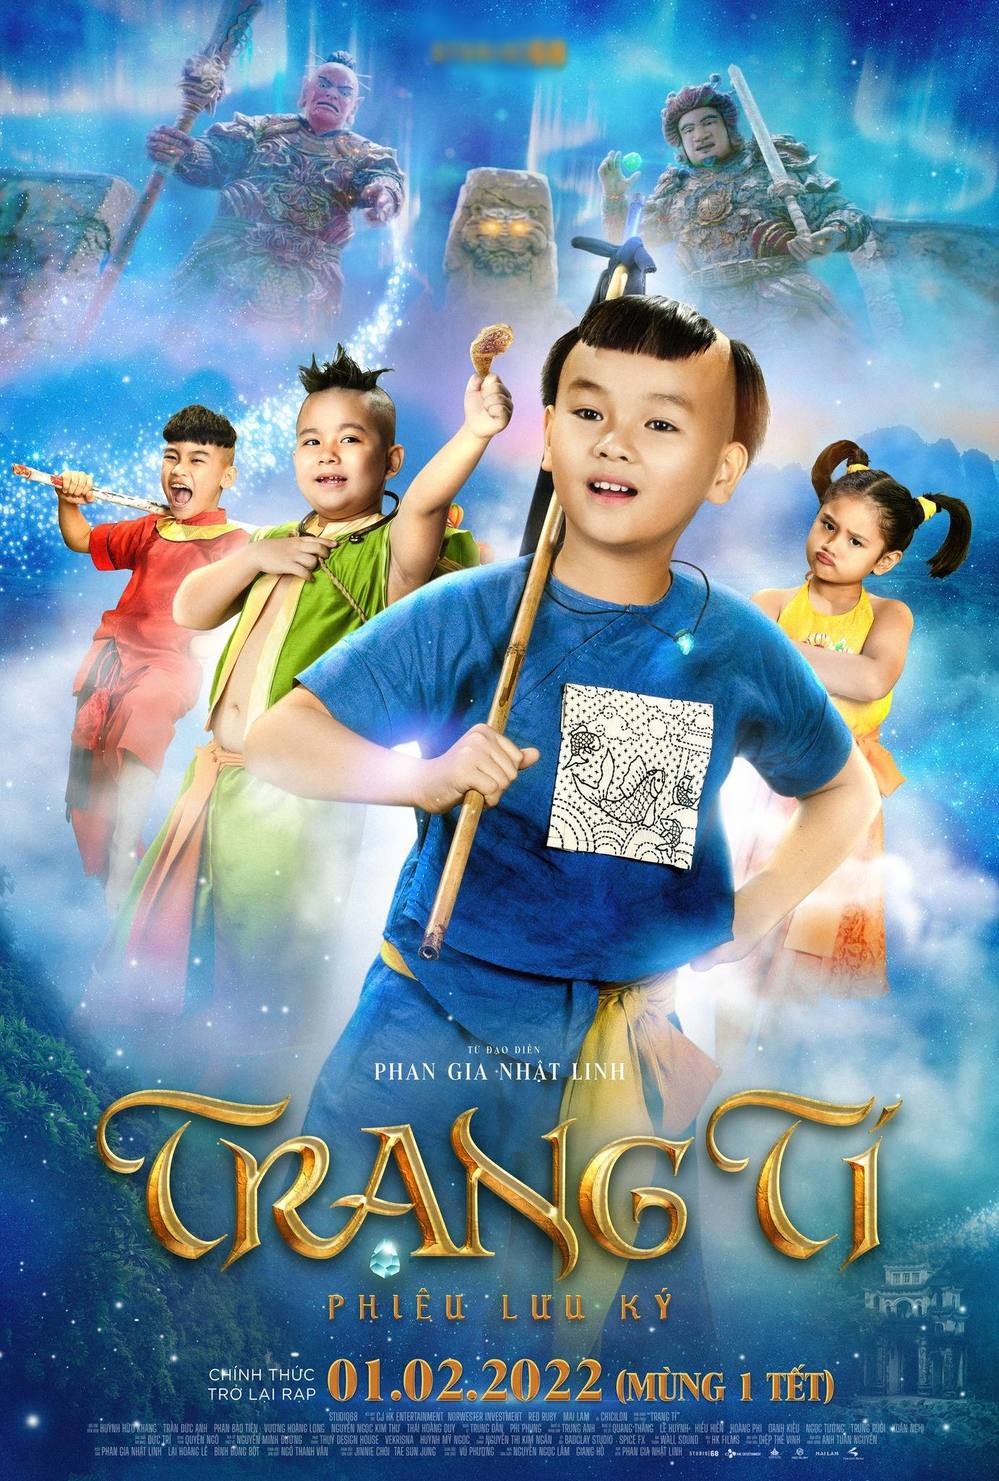 Banner Phim Trạng Tí Phiêu Lưu Ký (The Spectacular Adventure Of Little Prodigy)